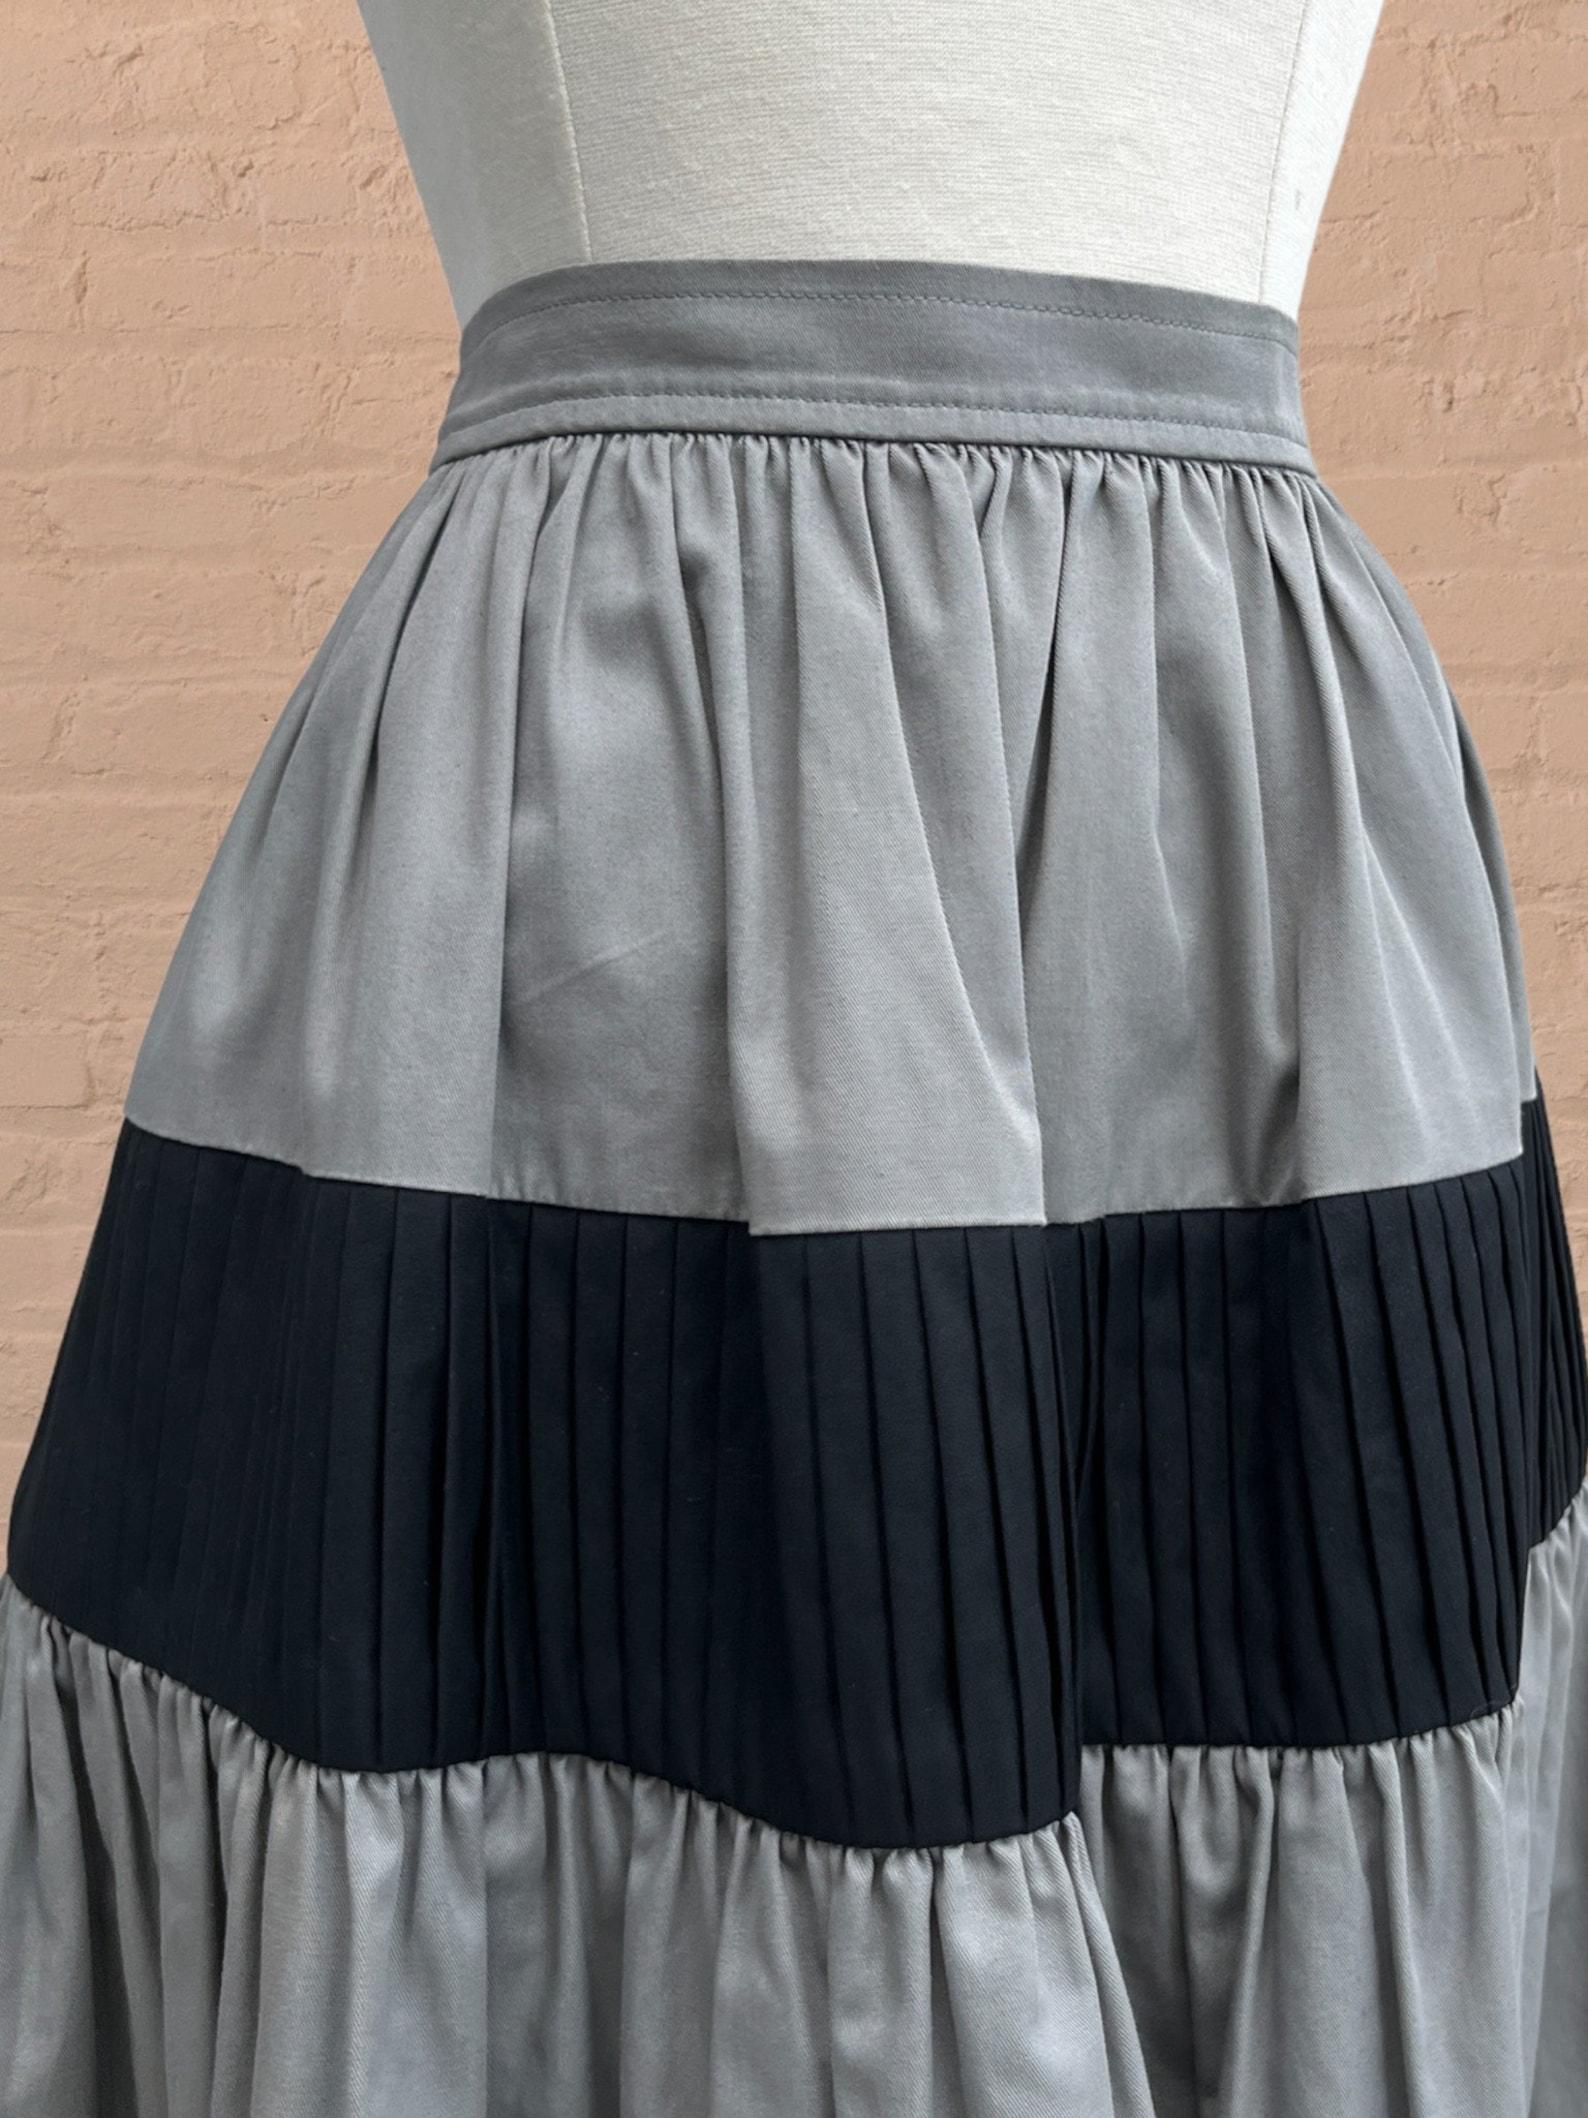 Yves Saint Laurent colorblock skirt For Sale 1